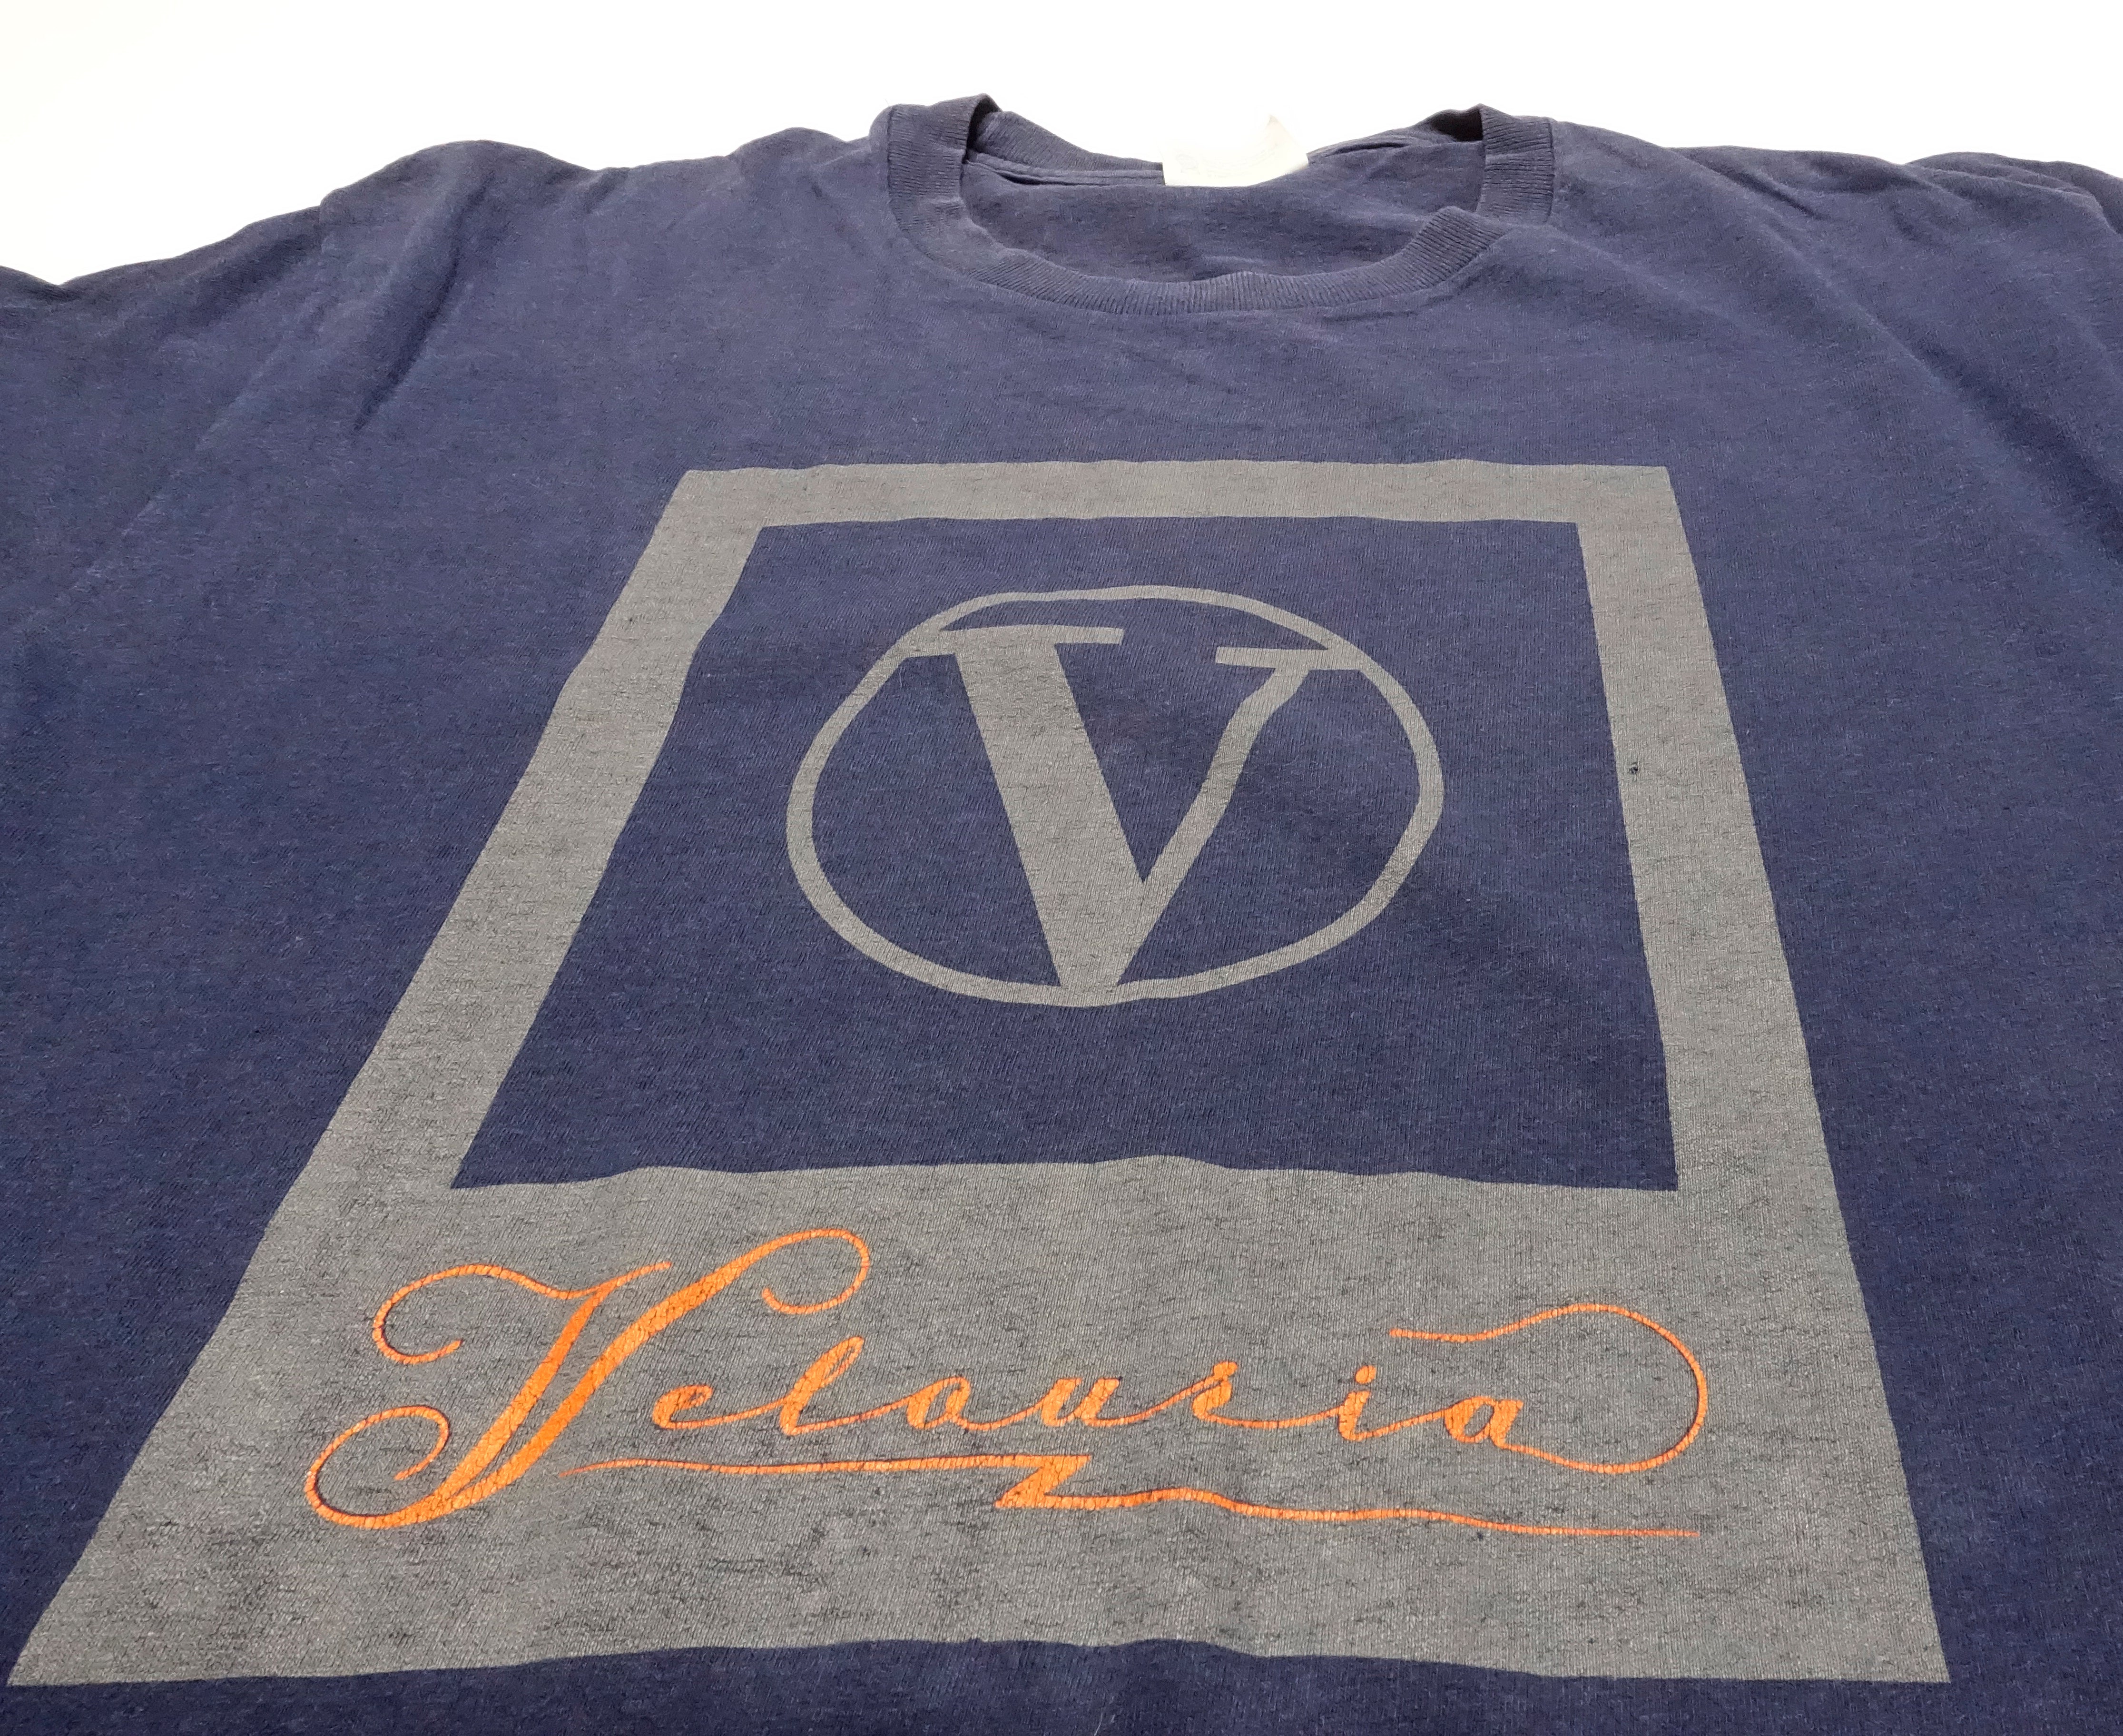 Pixies - Velouria Tour Shirt Size XL / Large